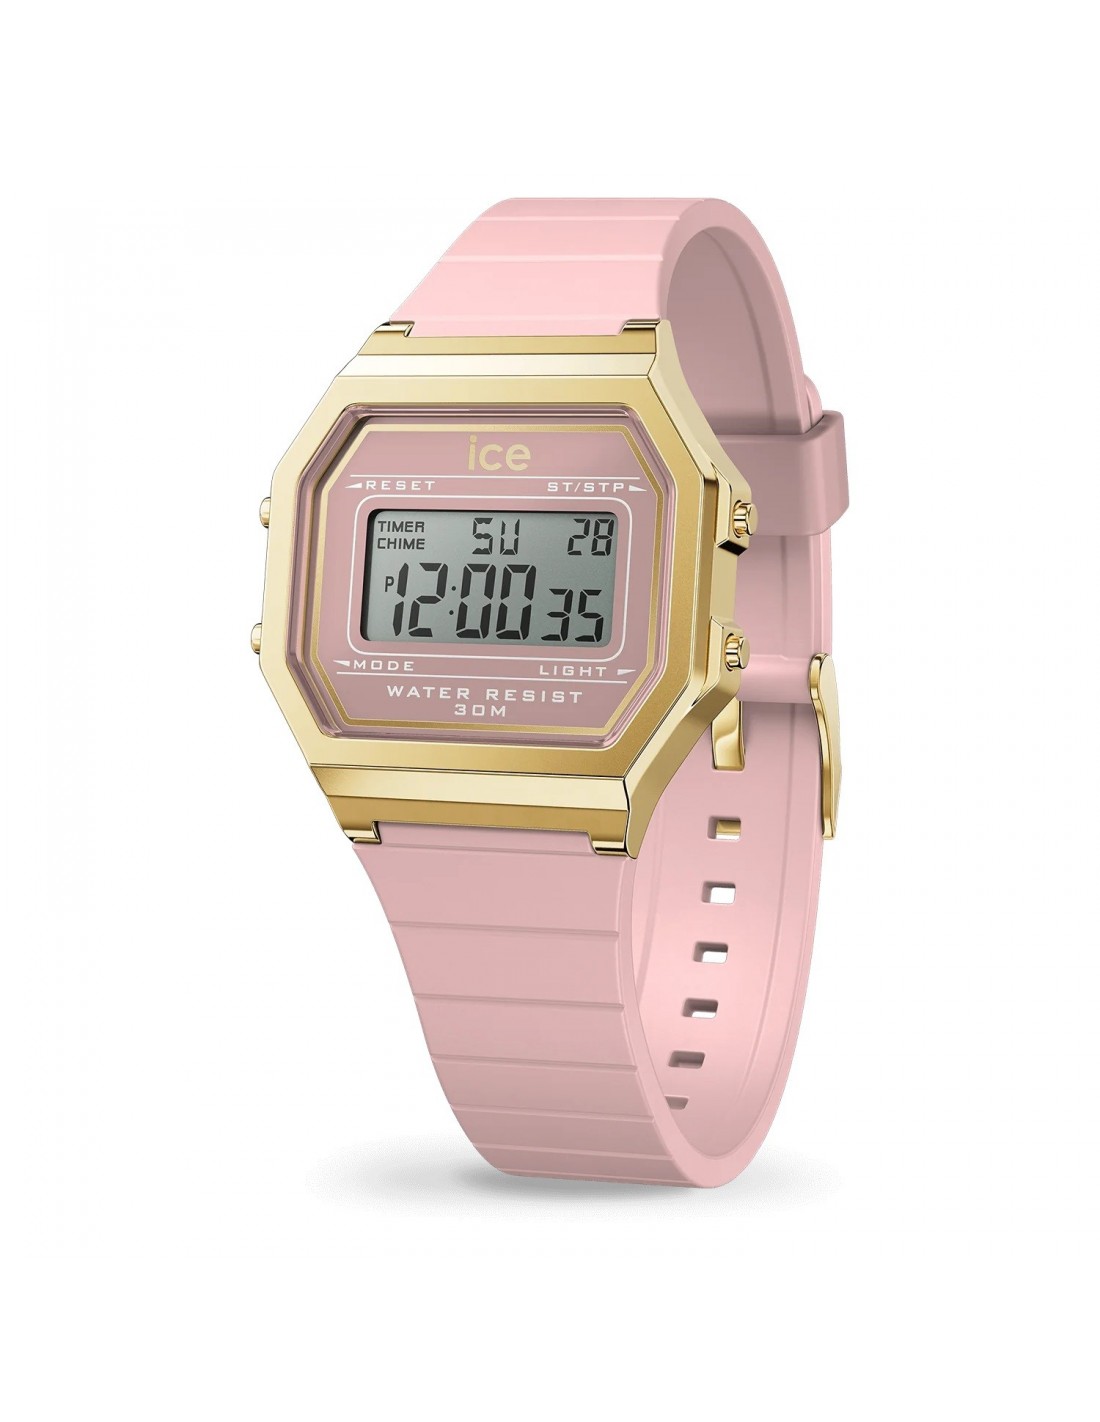 Reloj digital de mujer rosa dorado